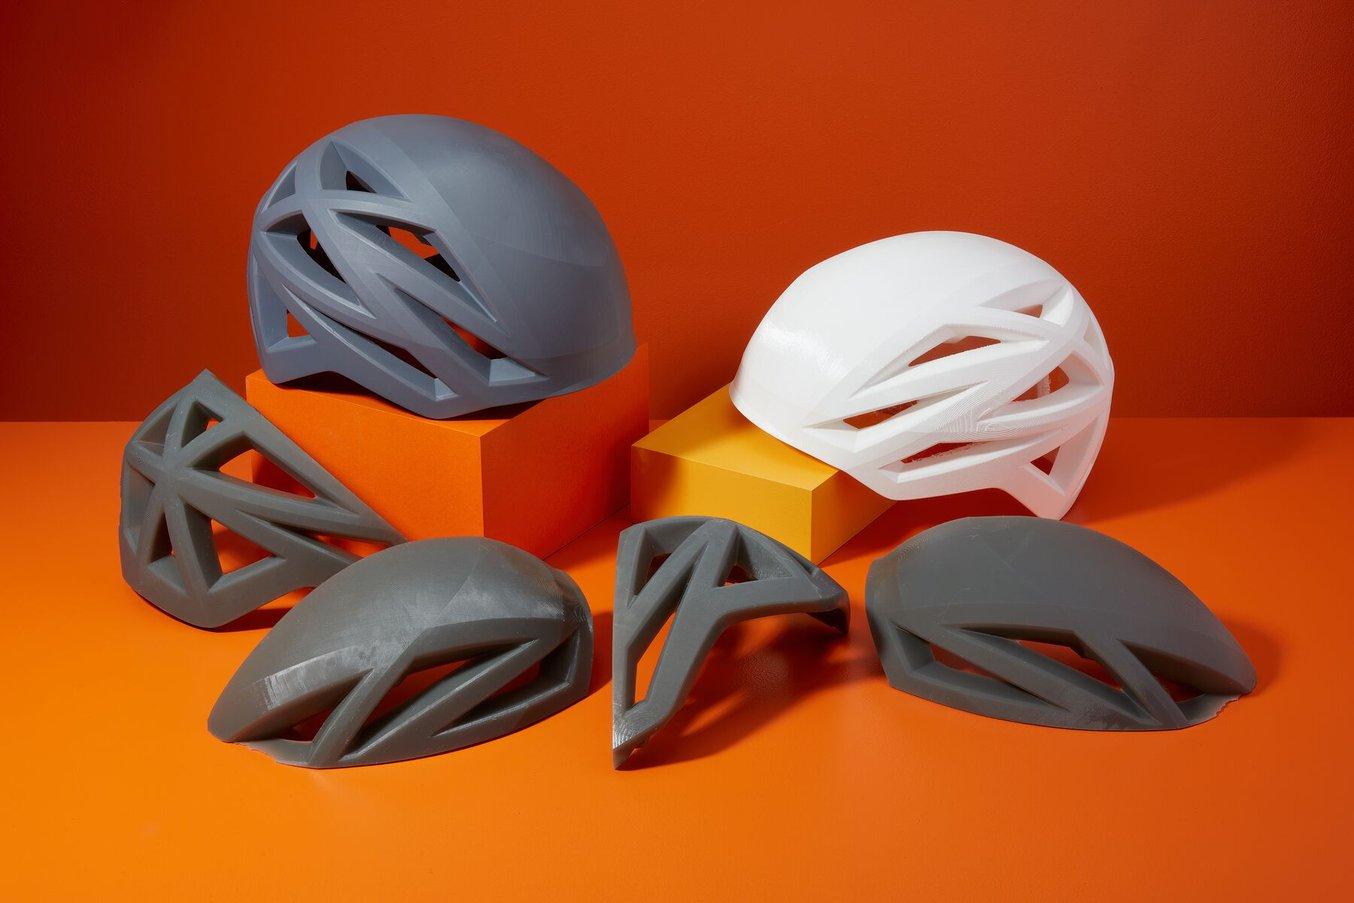 Modelli stampati in 3D con la Form 3L di Formlabs su sfondo arancione